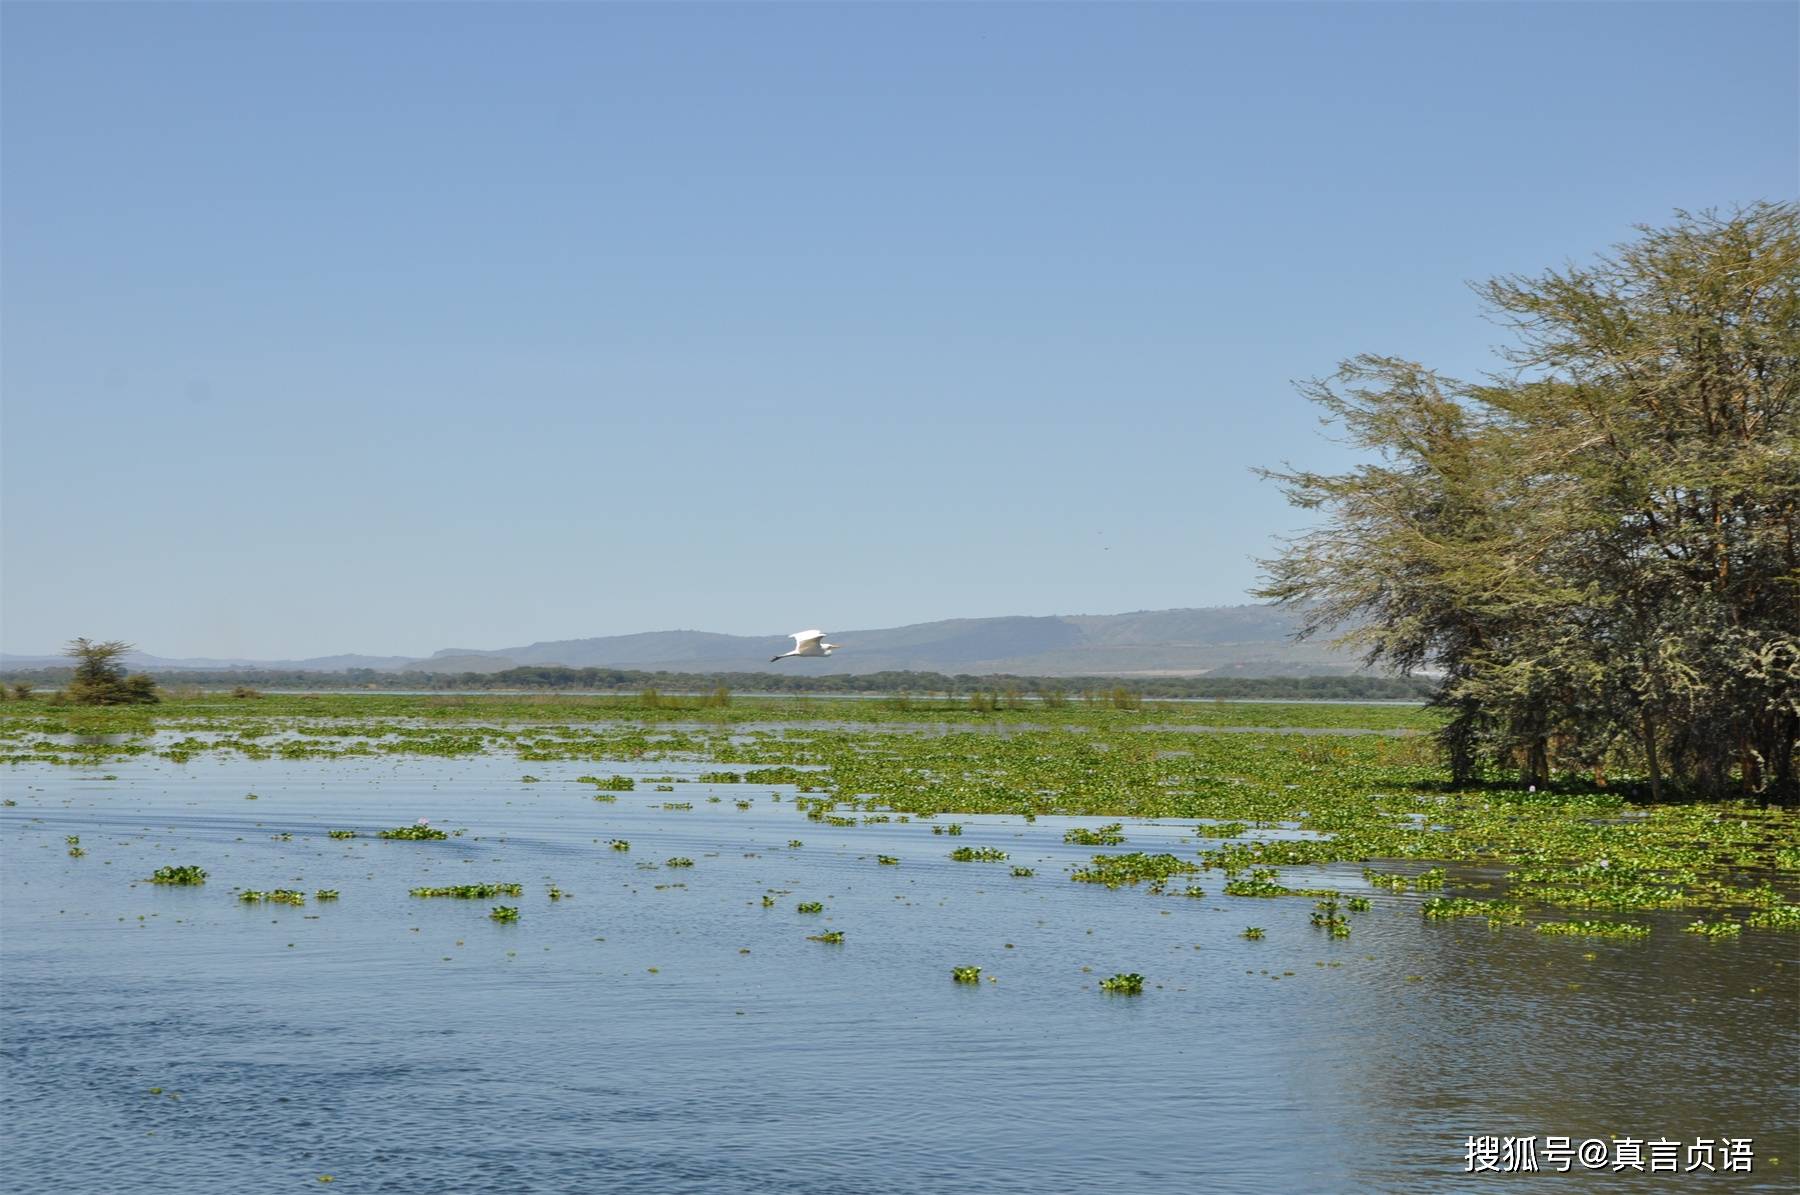   易思佳最初的船在纳瓦沙湖中荡漾——肯尼亚之旅之四